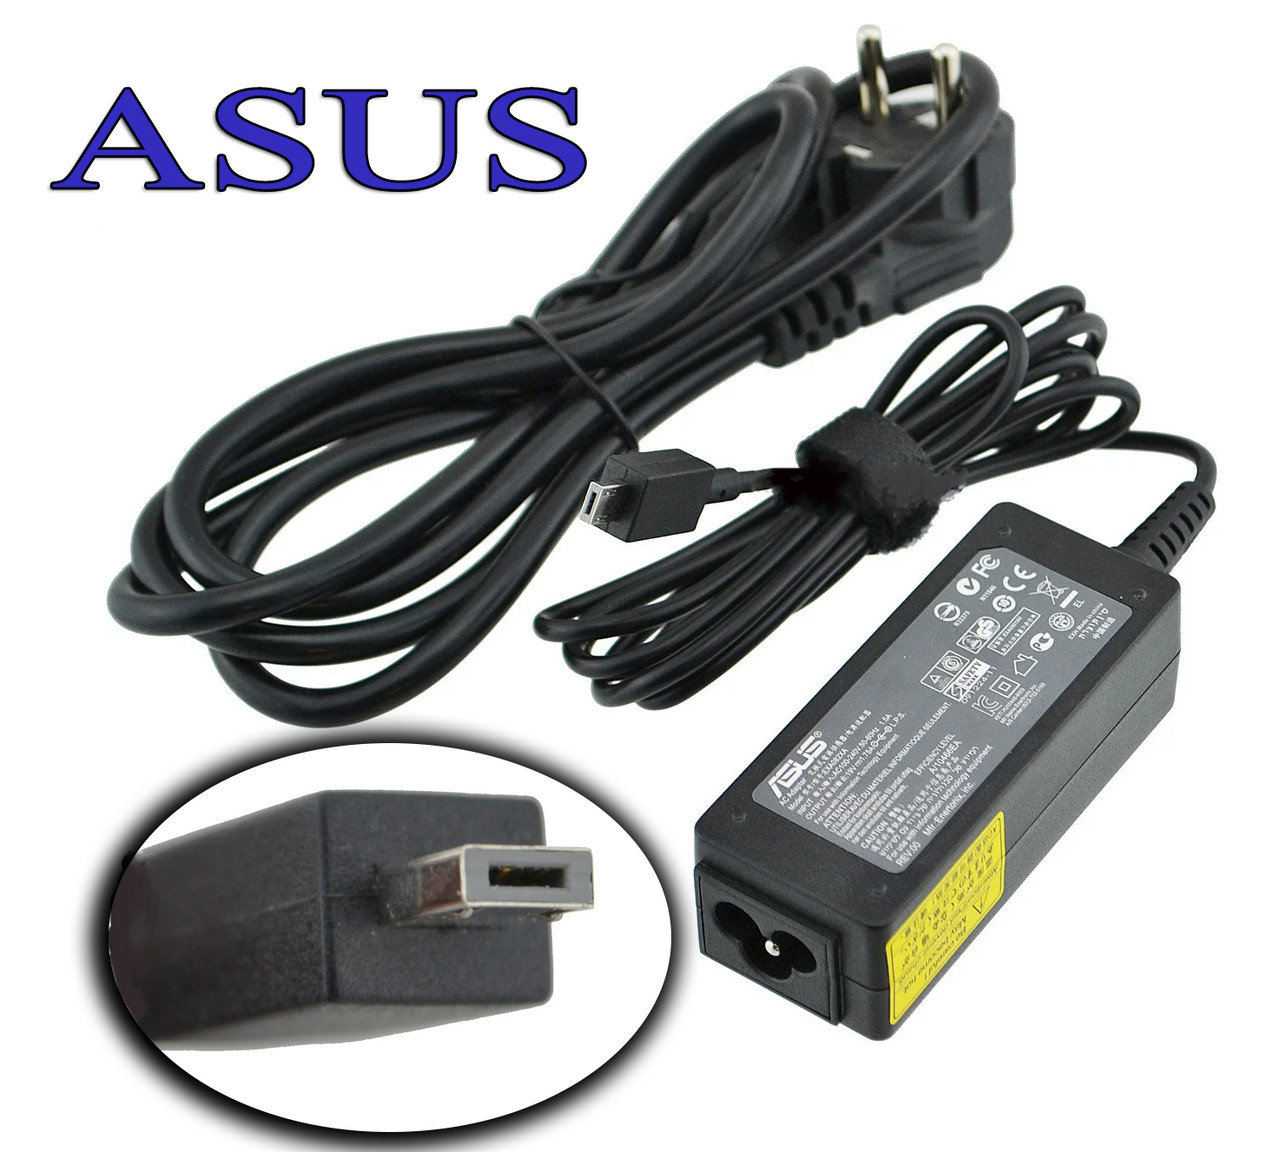 Блок живлення для ноутбука Asus 19V 1.75 A 33W X205T з штекером M-plug, адаптер блок живлення, зарядка